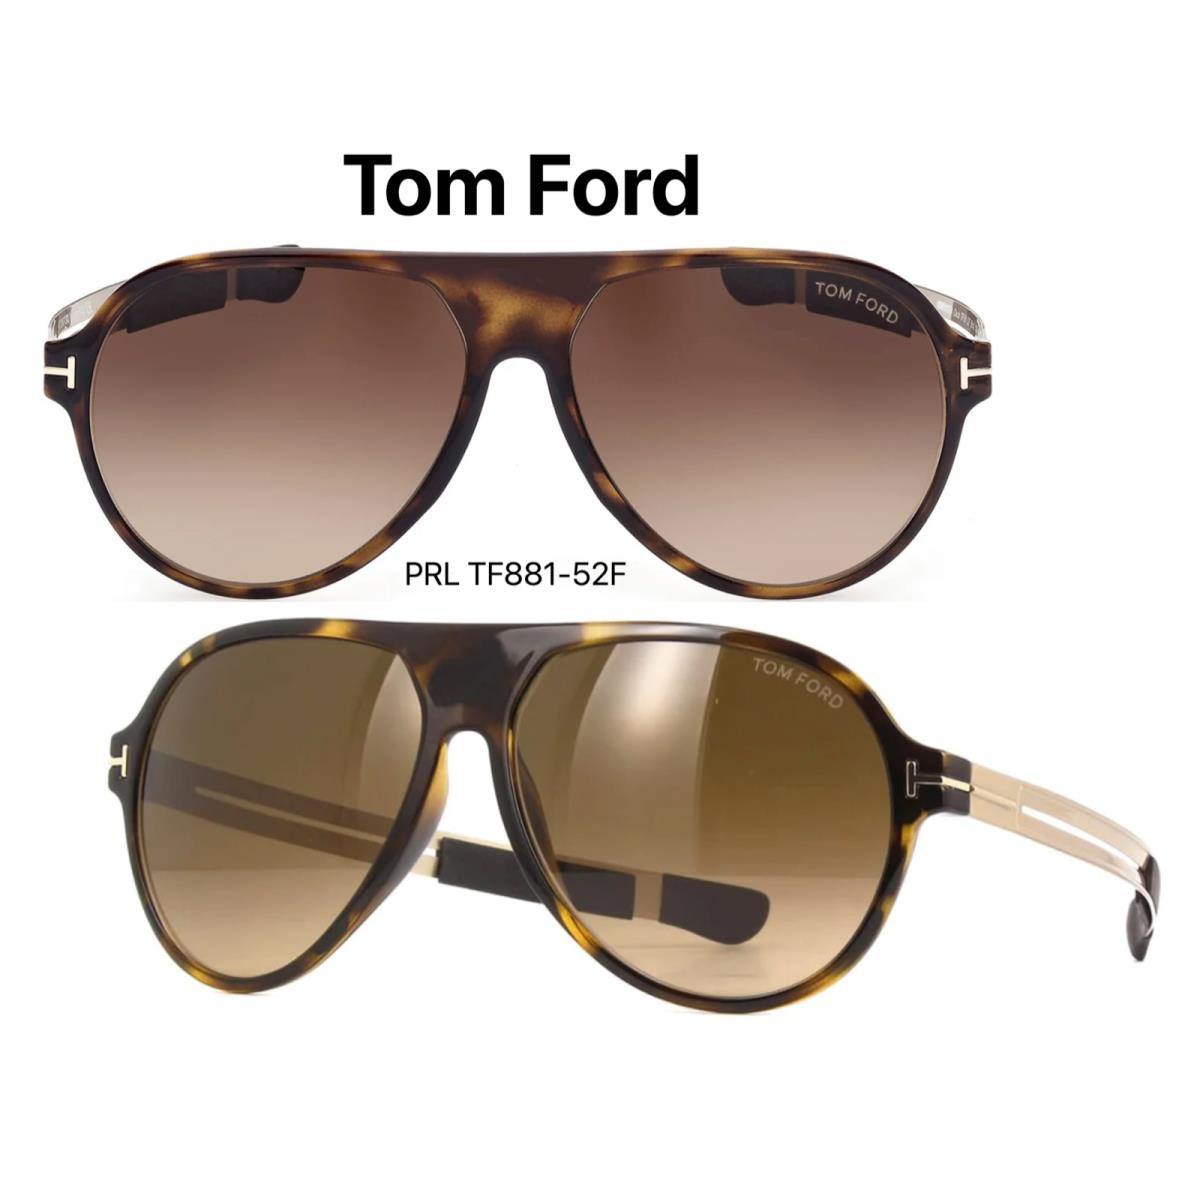 Tom Ford TF 881 52F Oscar Sunglasses Tortoise/gold FT 881 52F - Frame: , Lens: Brown